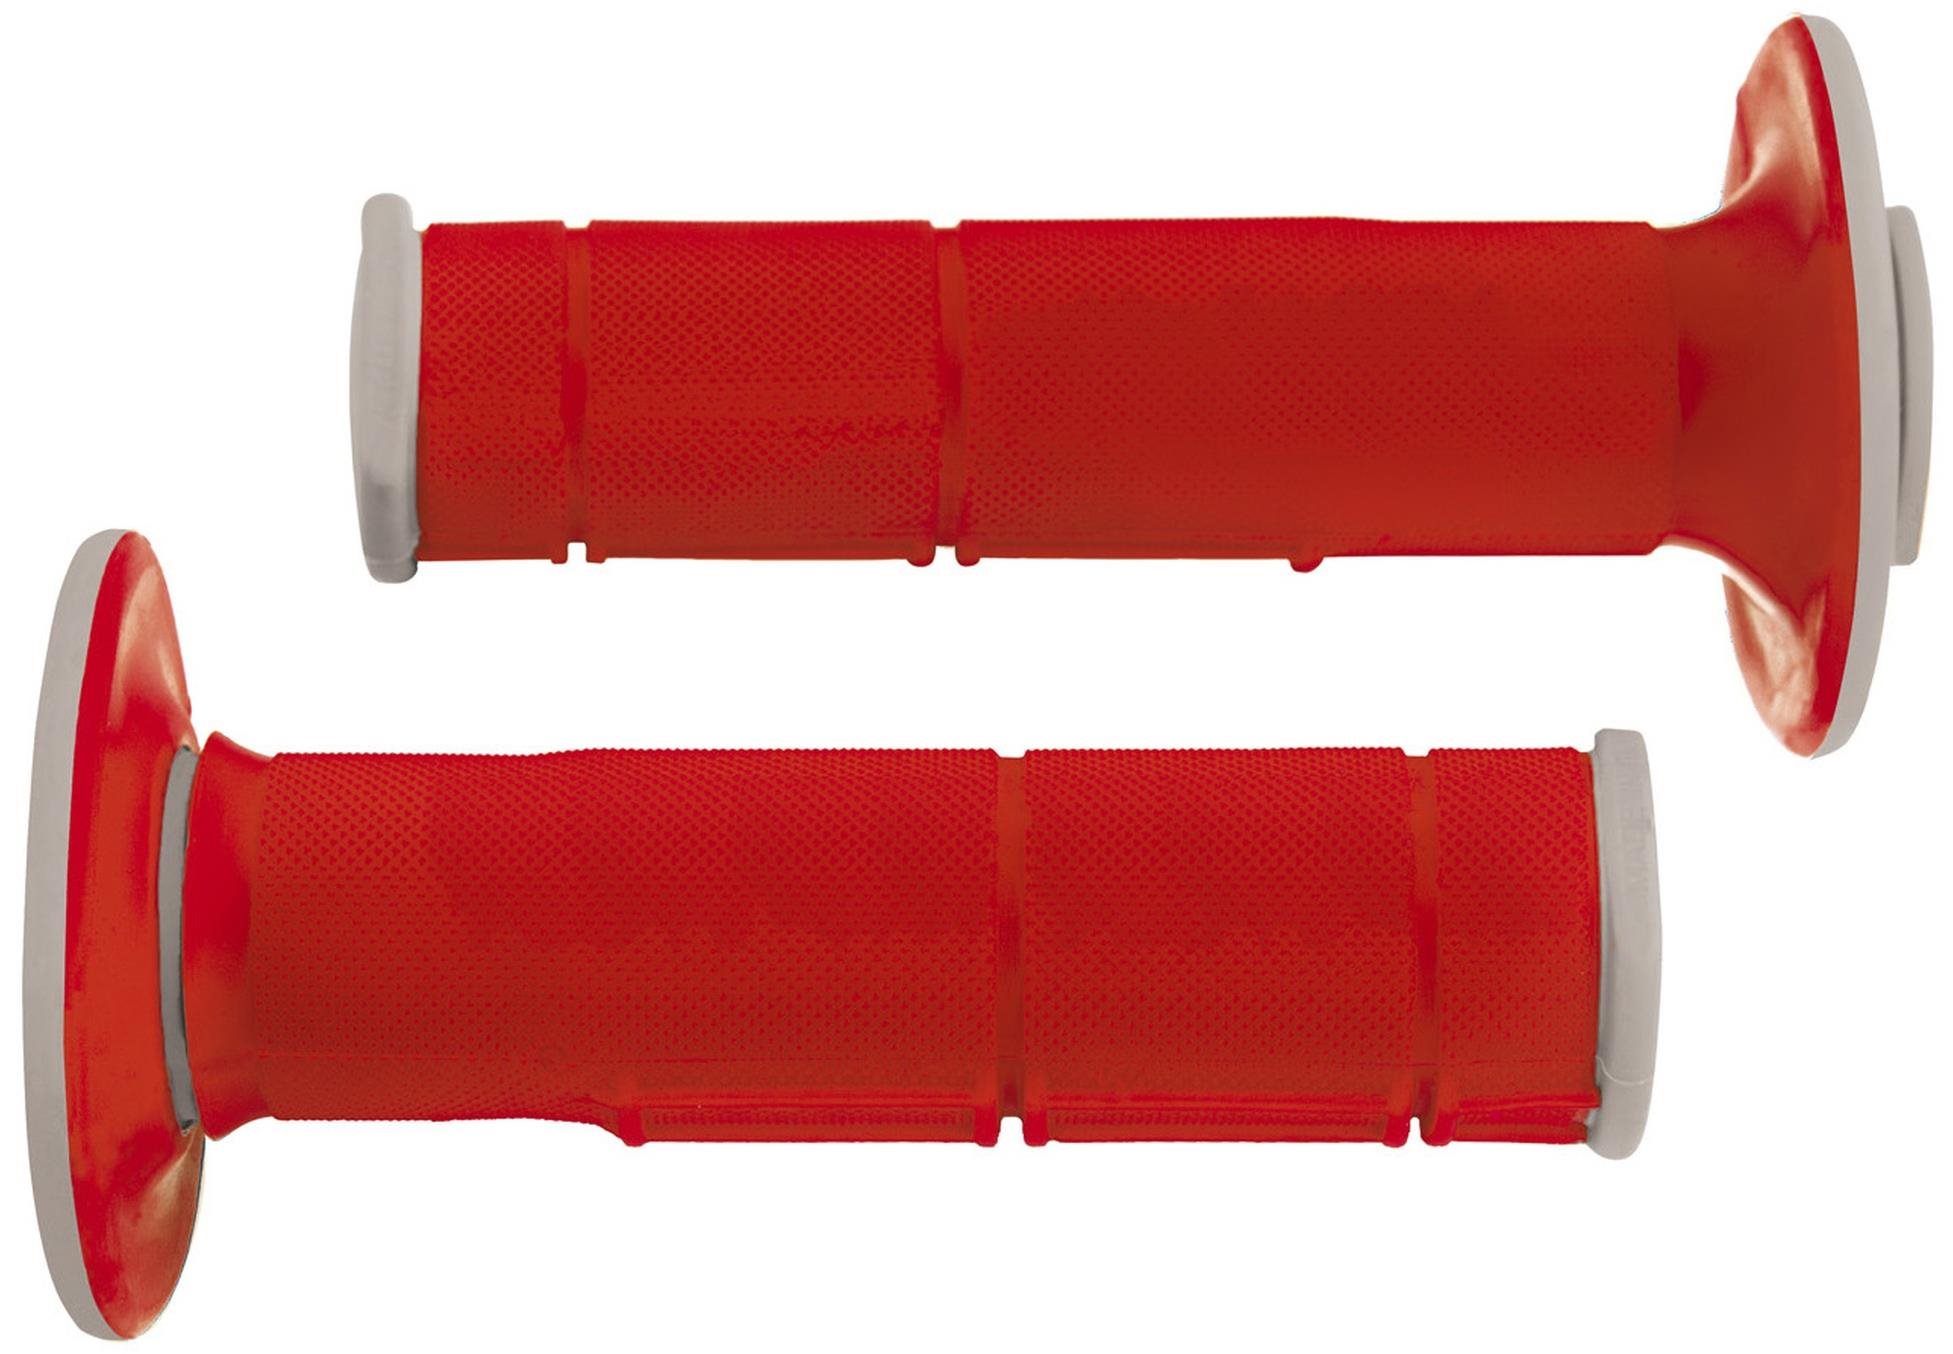 RTECH gripy Racing dvouvrstvé, měkké, červeno-šedé, pár, délka 116 mm